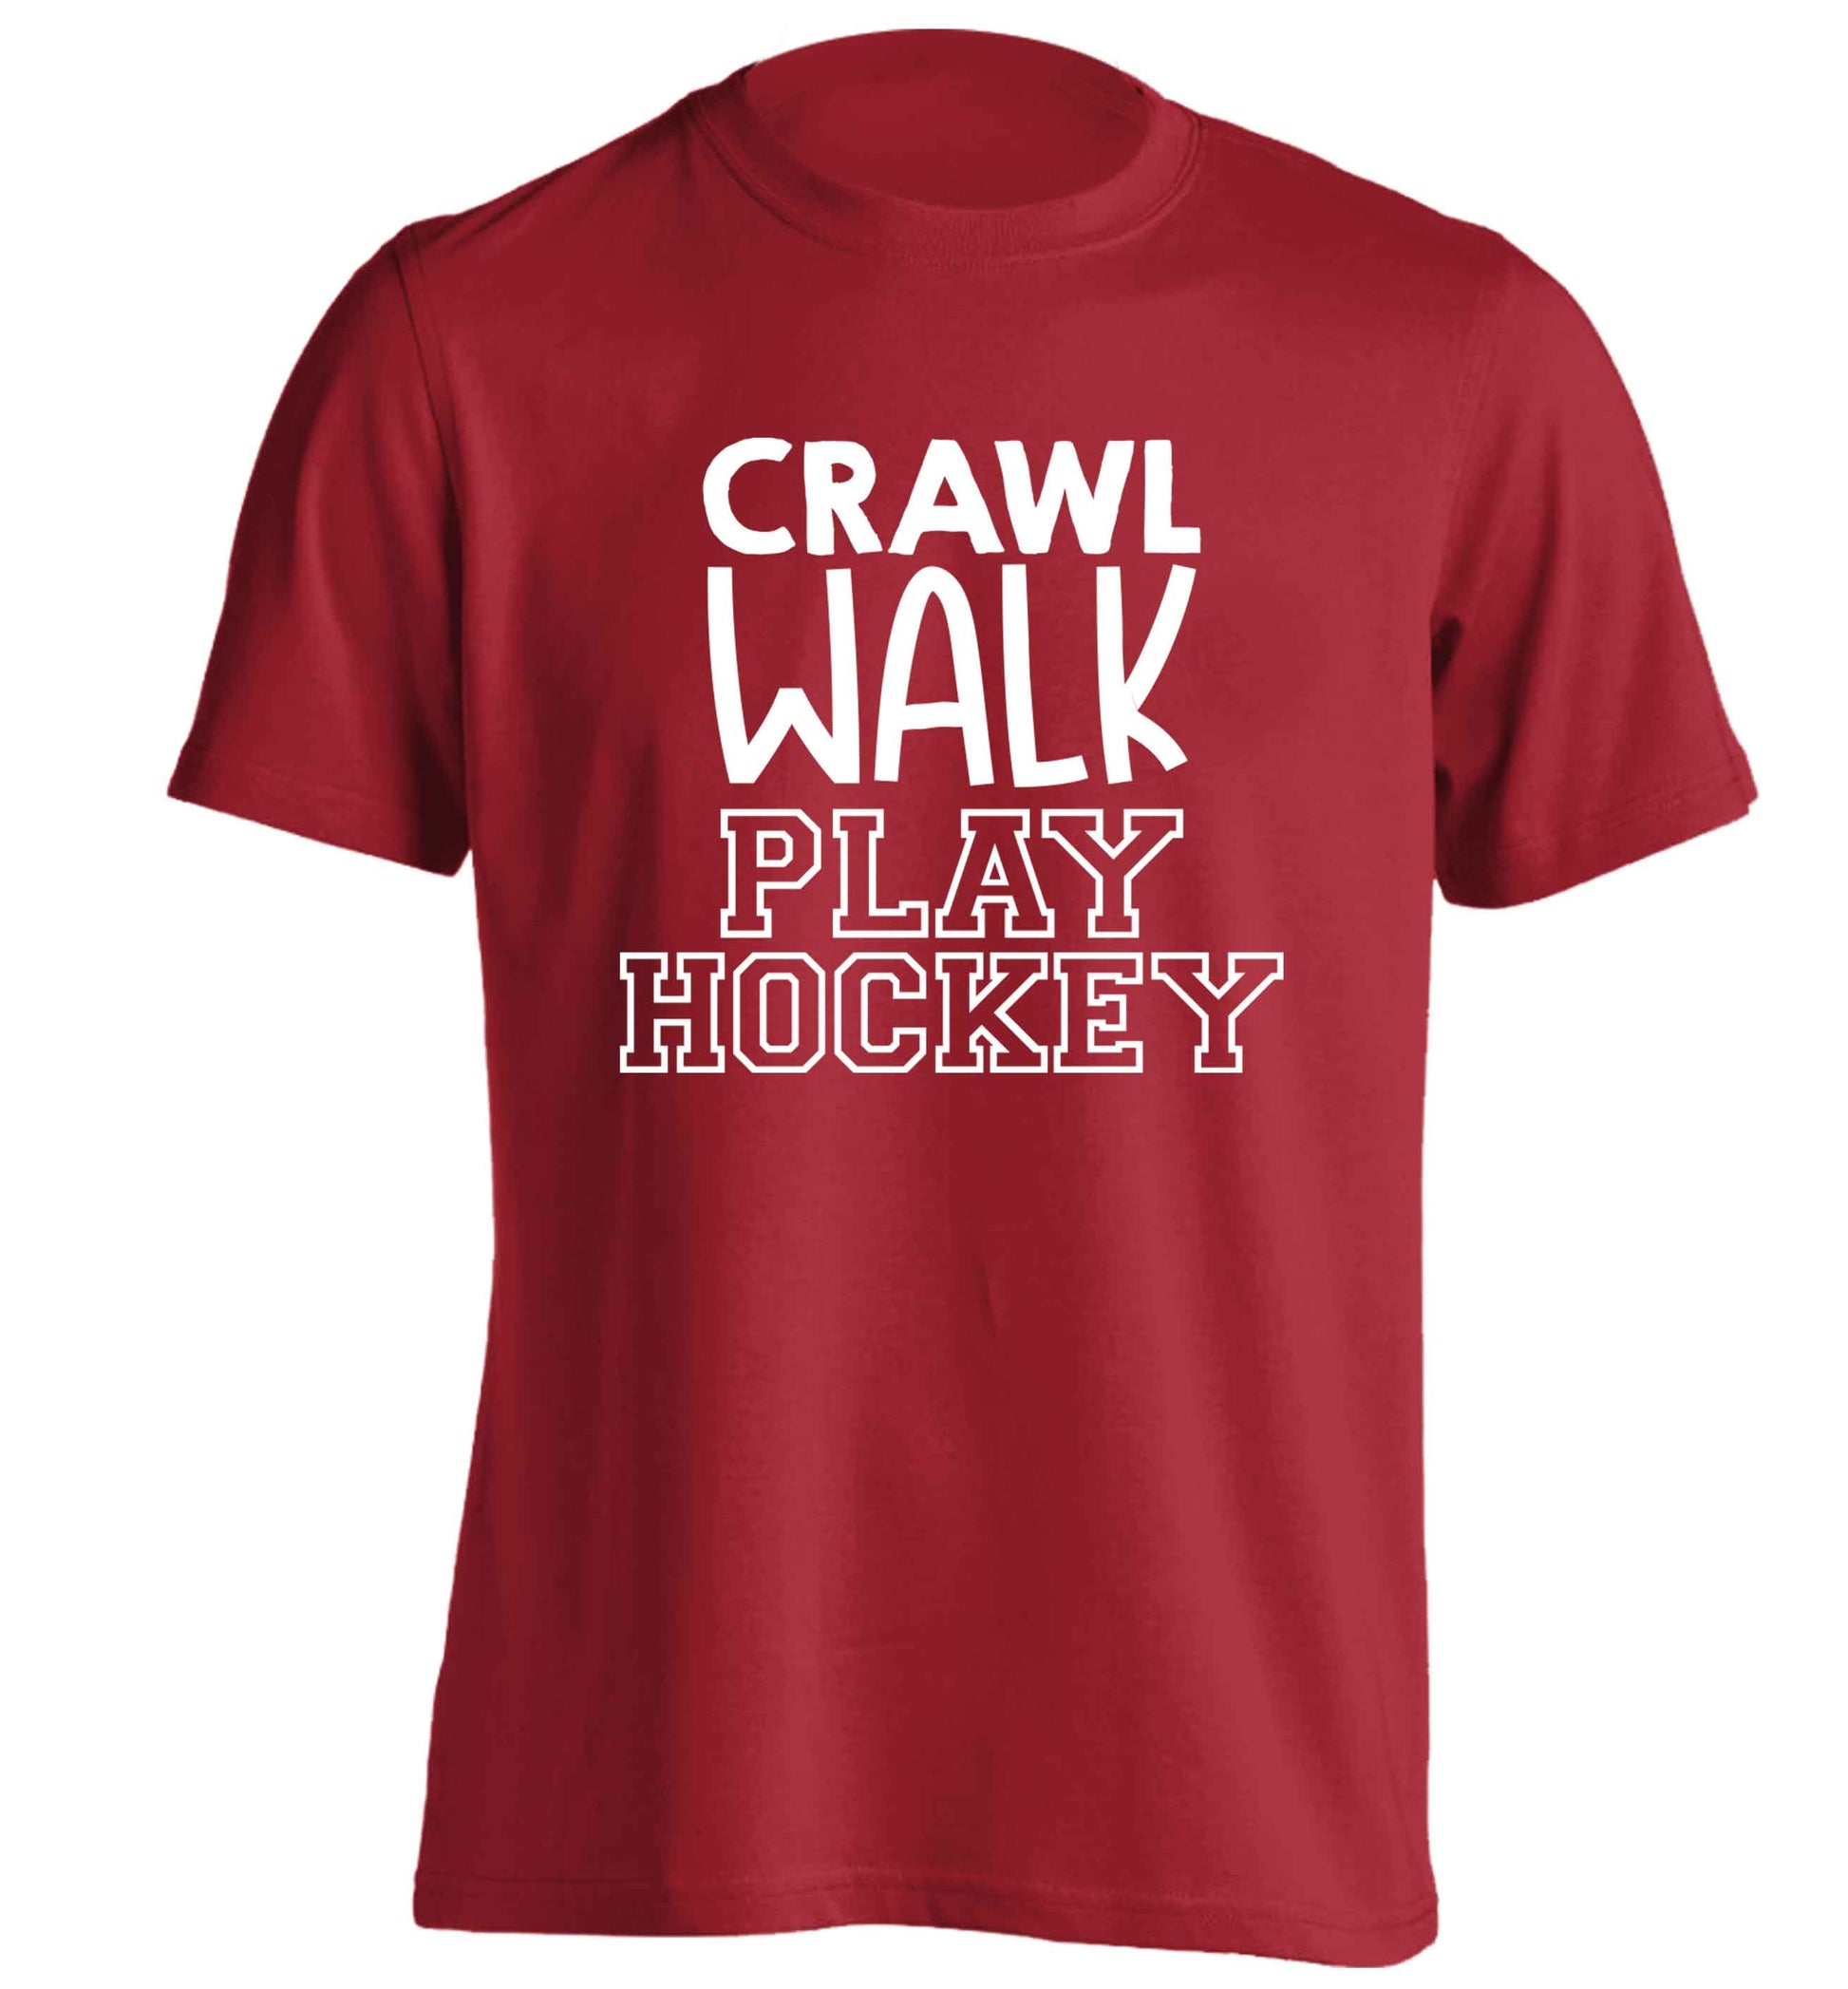 Crawl walk play hockey adults unisex red Tshirt 2XL